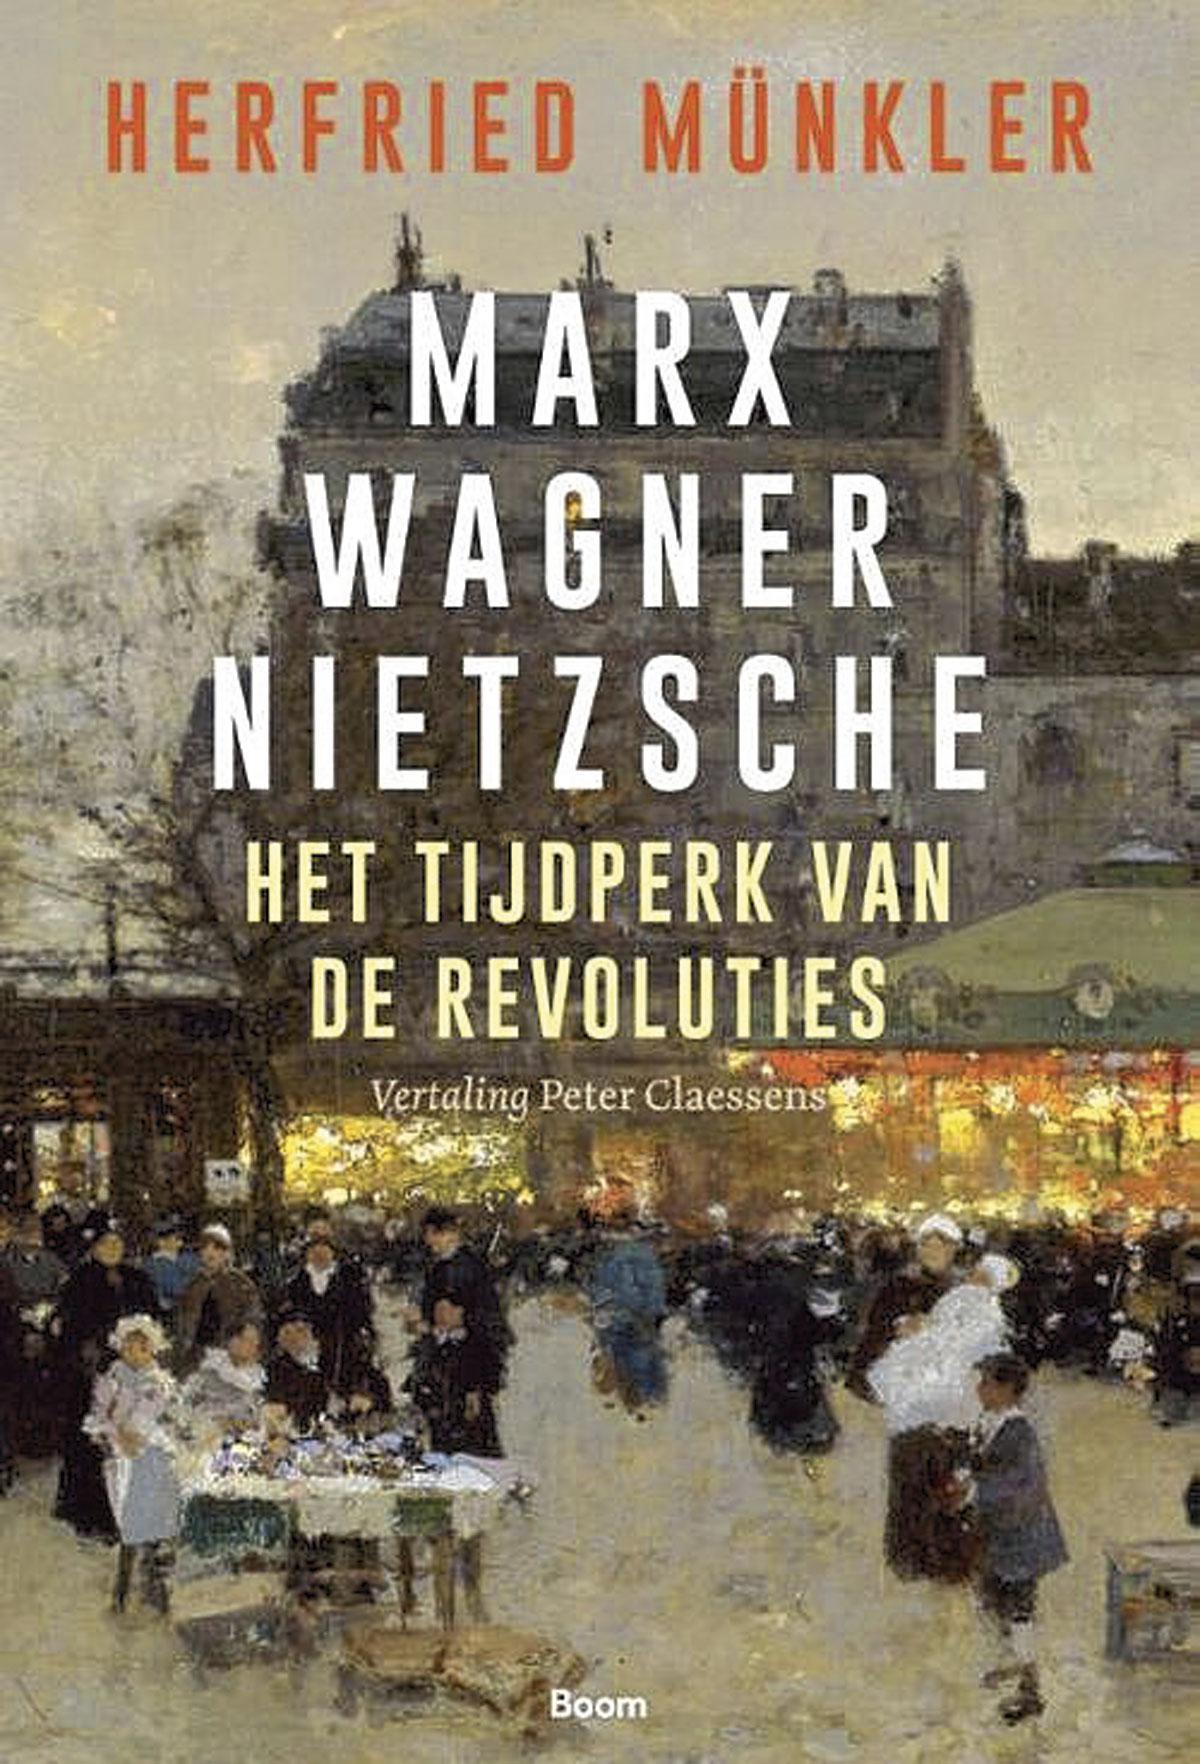 Herfried Münkler, Marx Wagner Nietzsche. Het tijdperk van de revoluties, Boom, 576 blz., 39,90 euro.